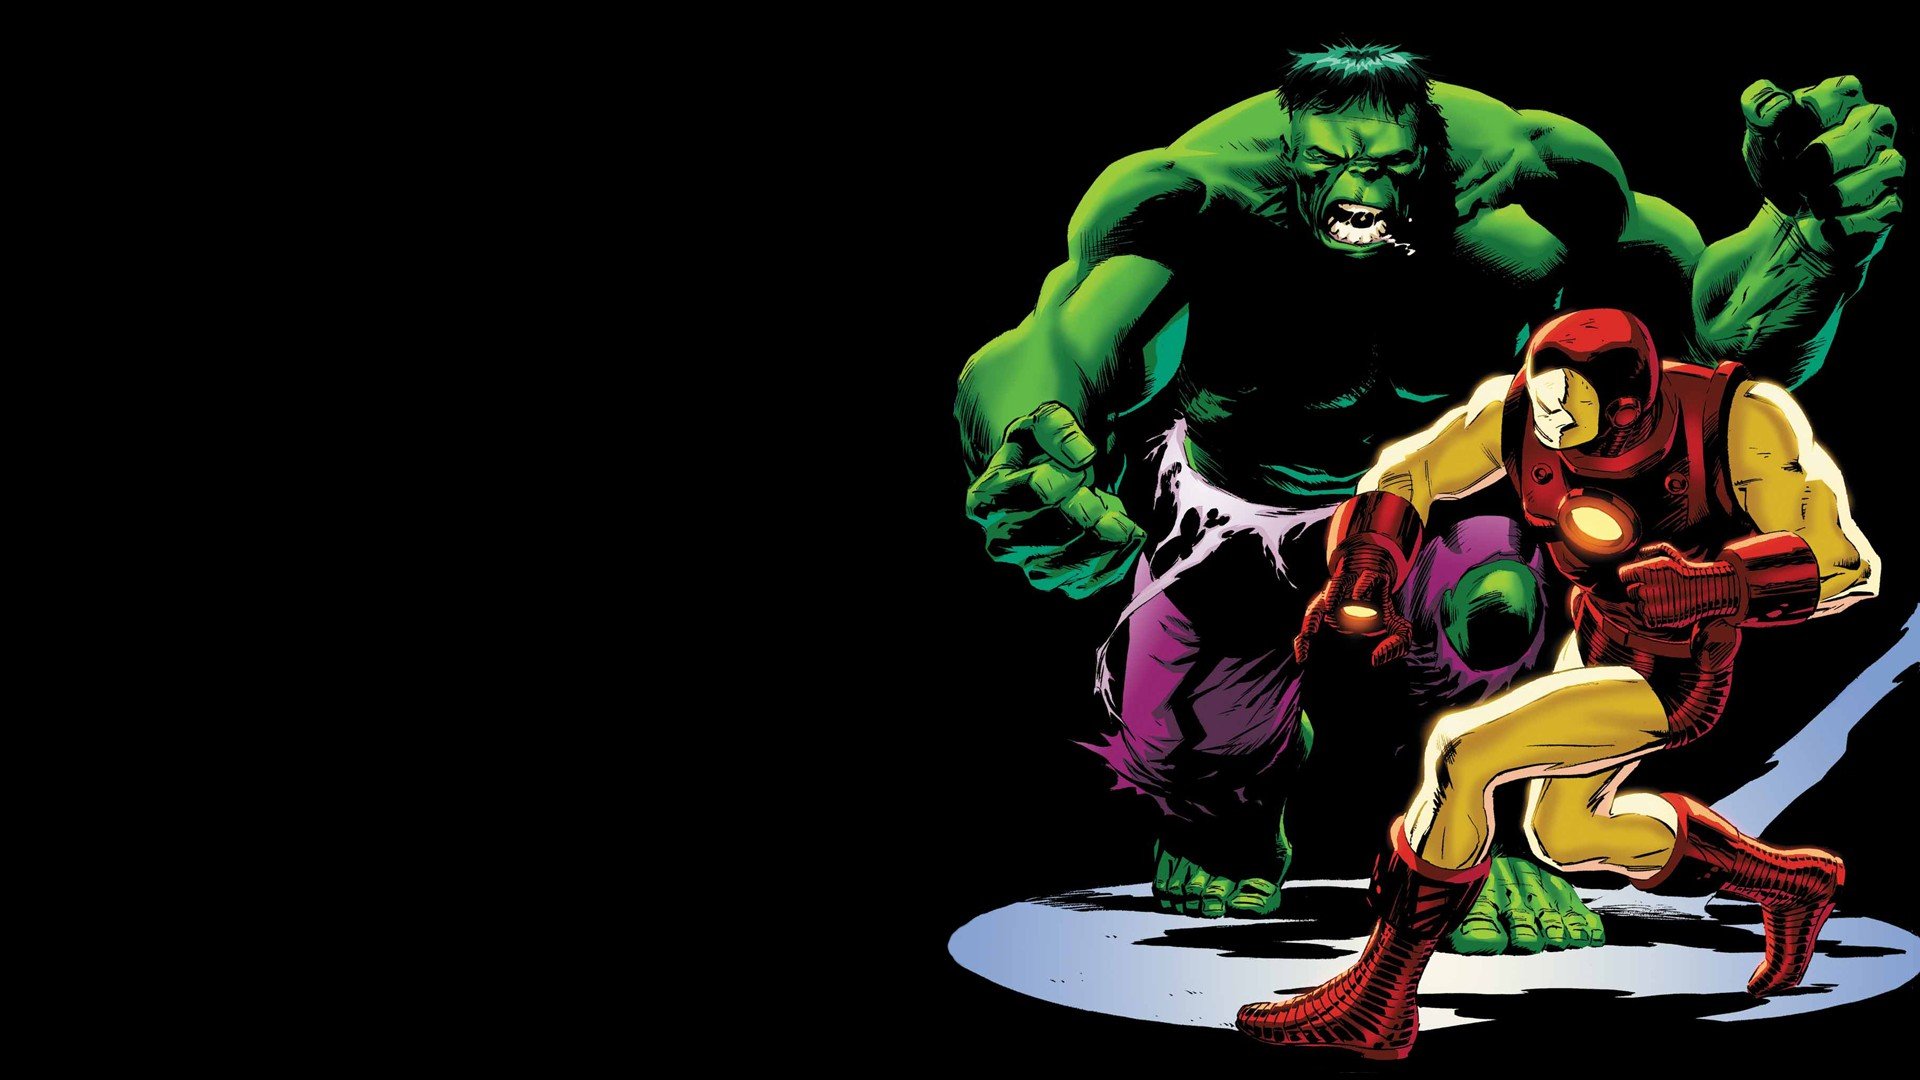 Smash Hulk Comic Book Cover - HD Wallpaper 